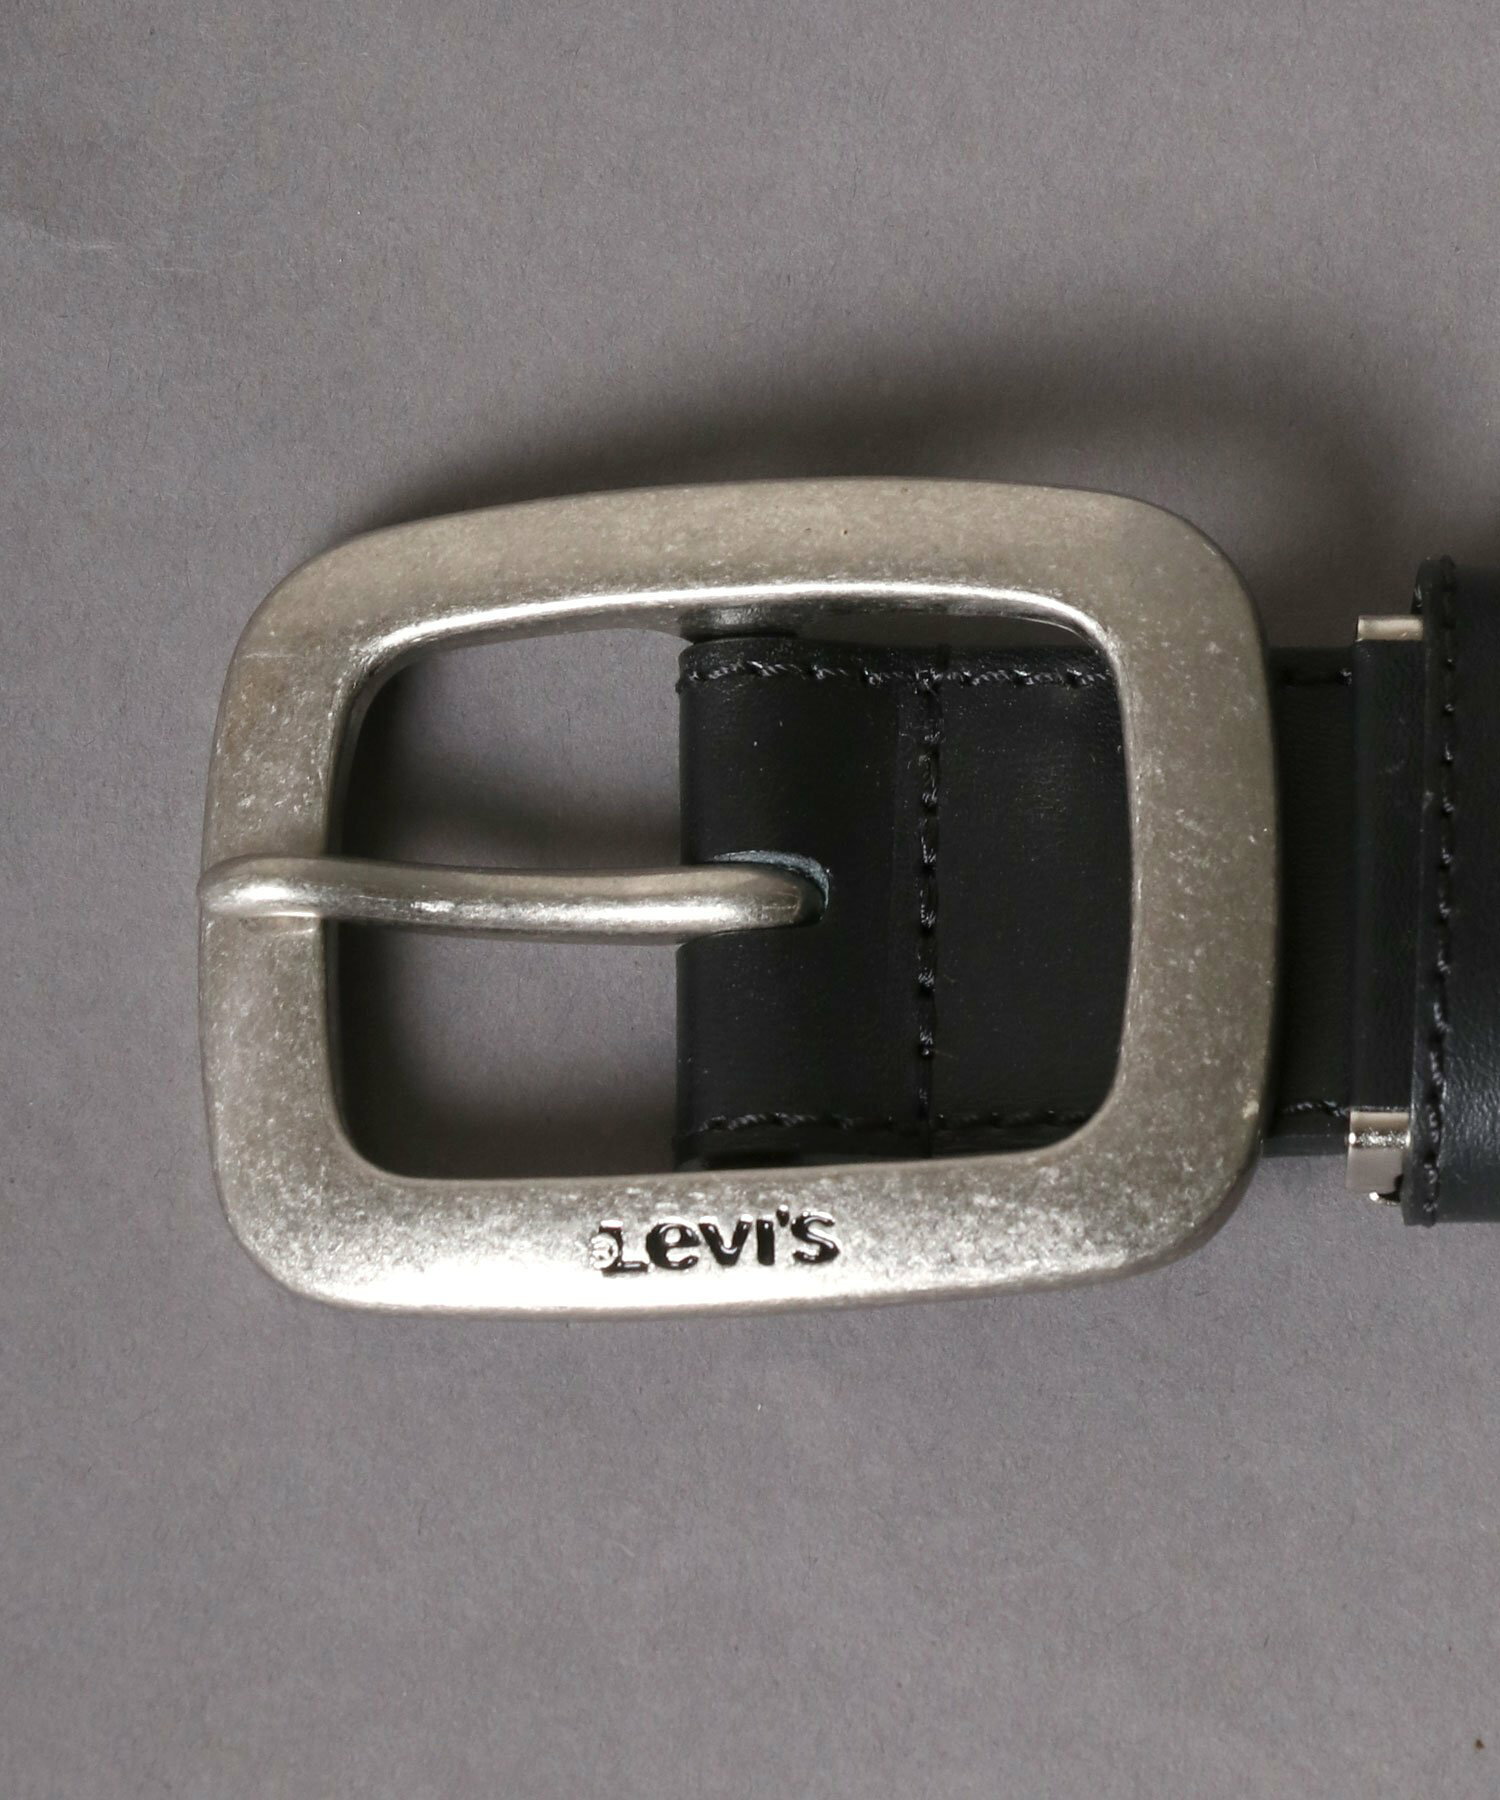 Levi's ベルト メンズ 本革 レザー ブランド カジュアル 牛革